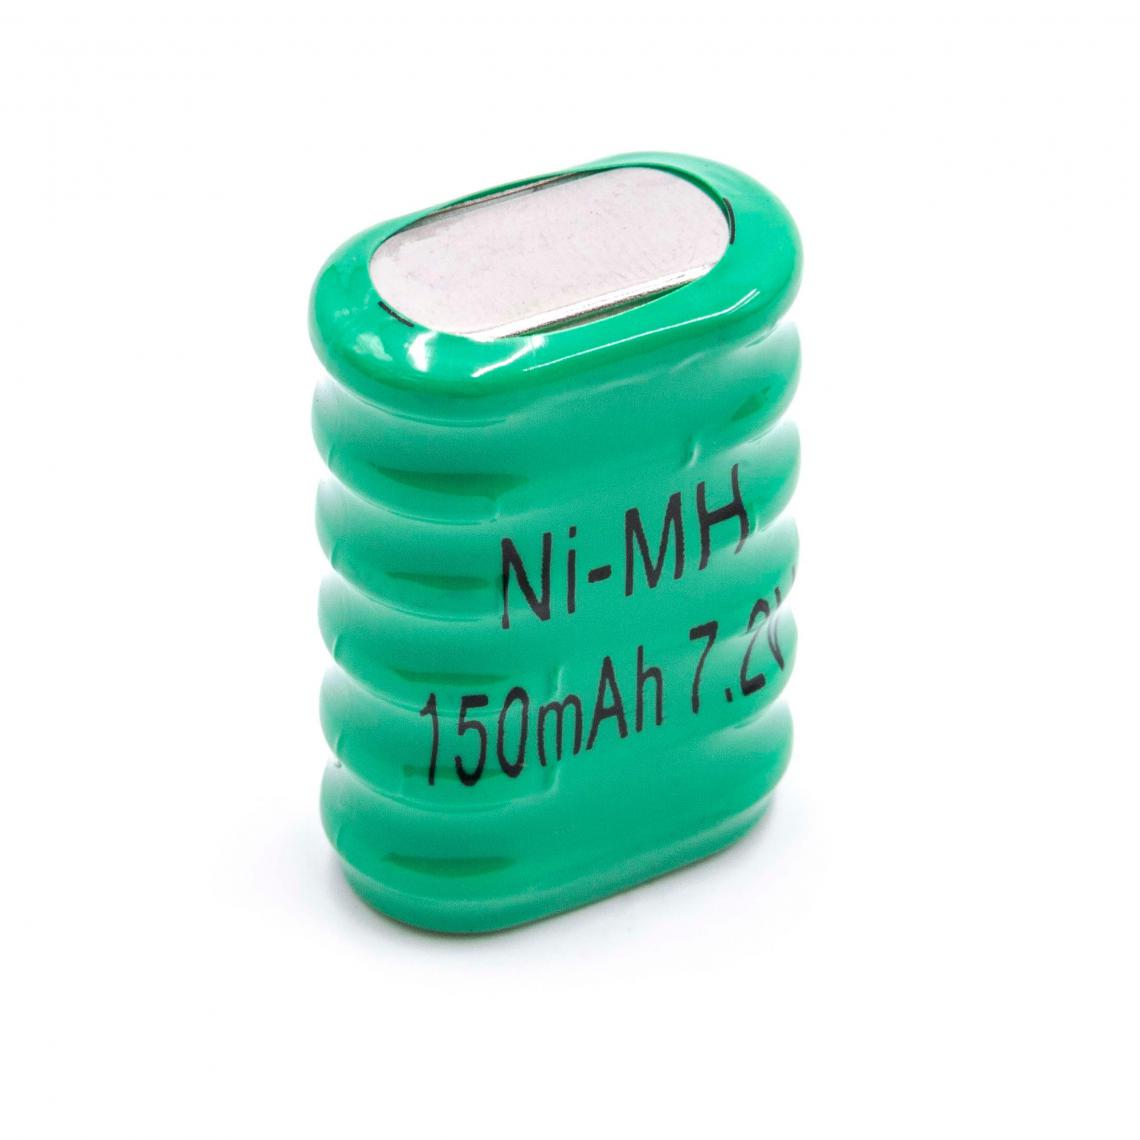 Vhbw - vhbw NiMH Remplacement de la pile bouton (6x cellule) type 6/V150H 150mAh 7.2V convient pour les batteries de modélisme, l'éclairage solaire, etc. - Autre appareil de mesure